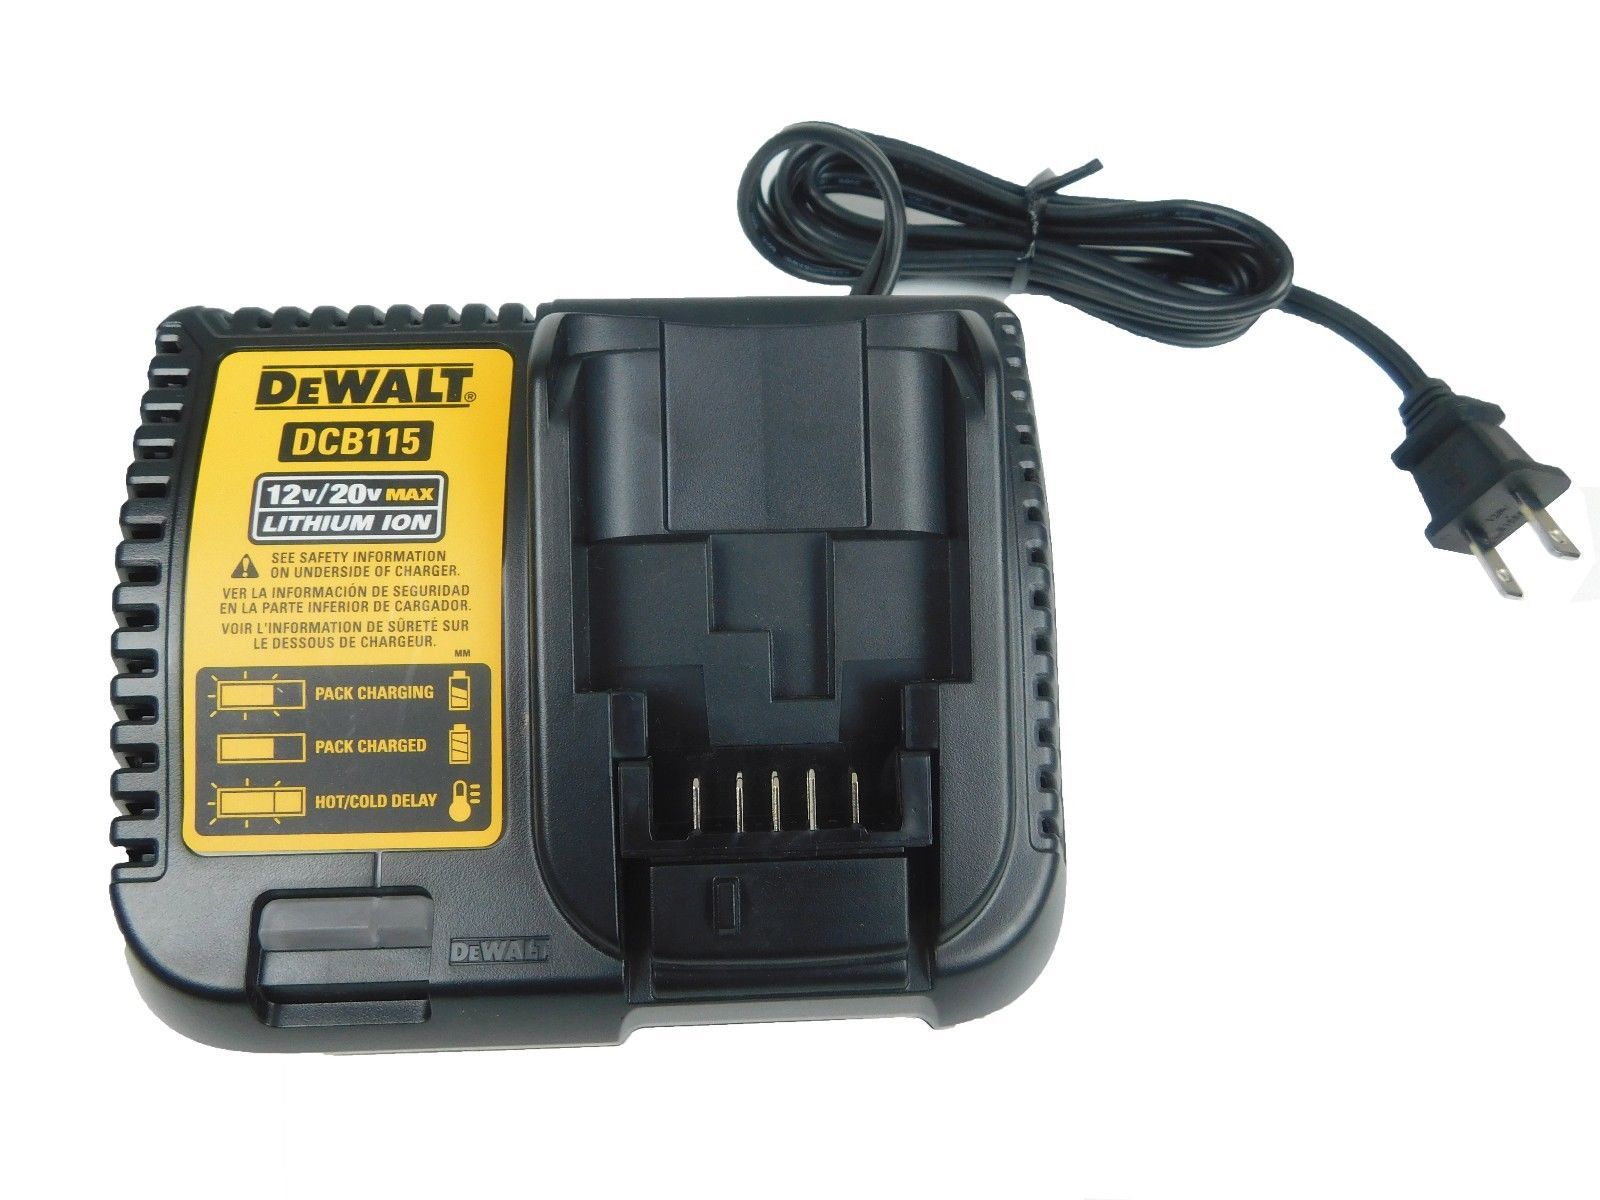 Dewalt-DCB115-10.8V-18V-MAX-Lithium-Ion-Multi-Voltage-Battery-Charger-image-4